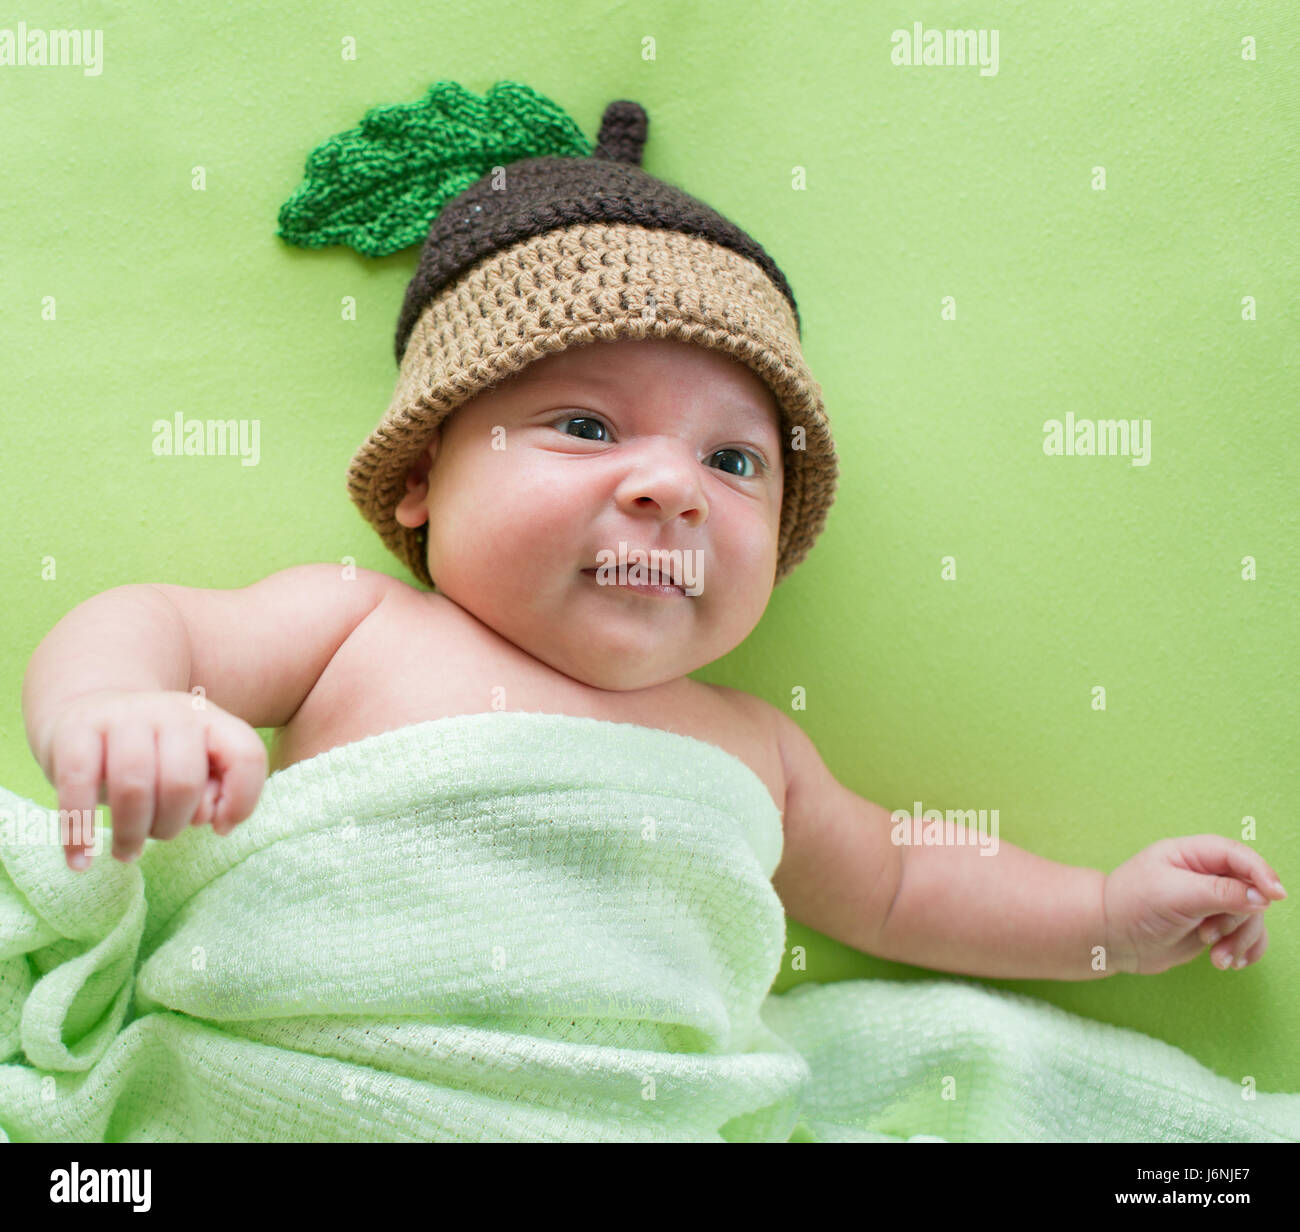 baby boy weared in acorn hat Stock Photo